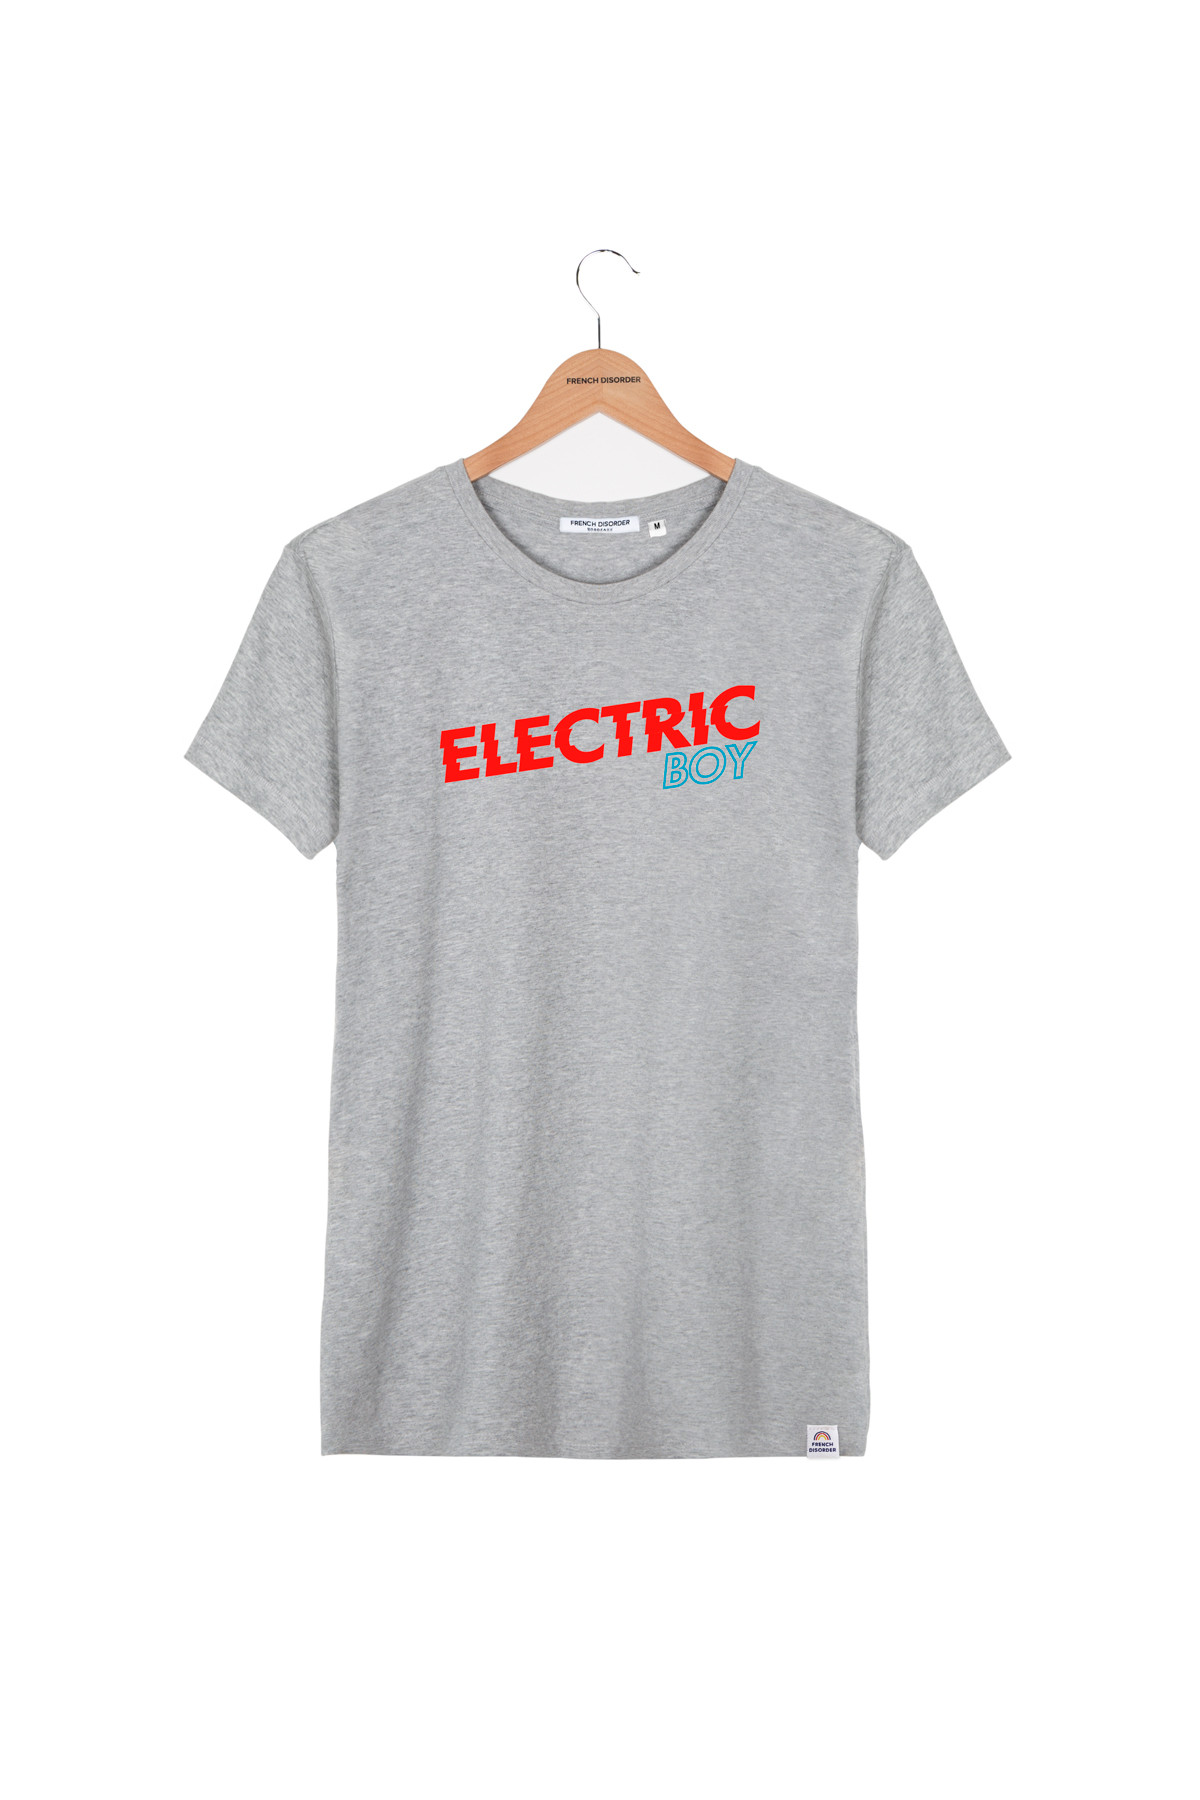 Tshirt ELECTRIC BOY French Disorder